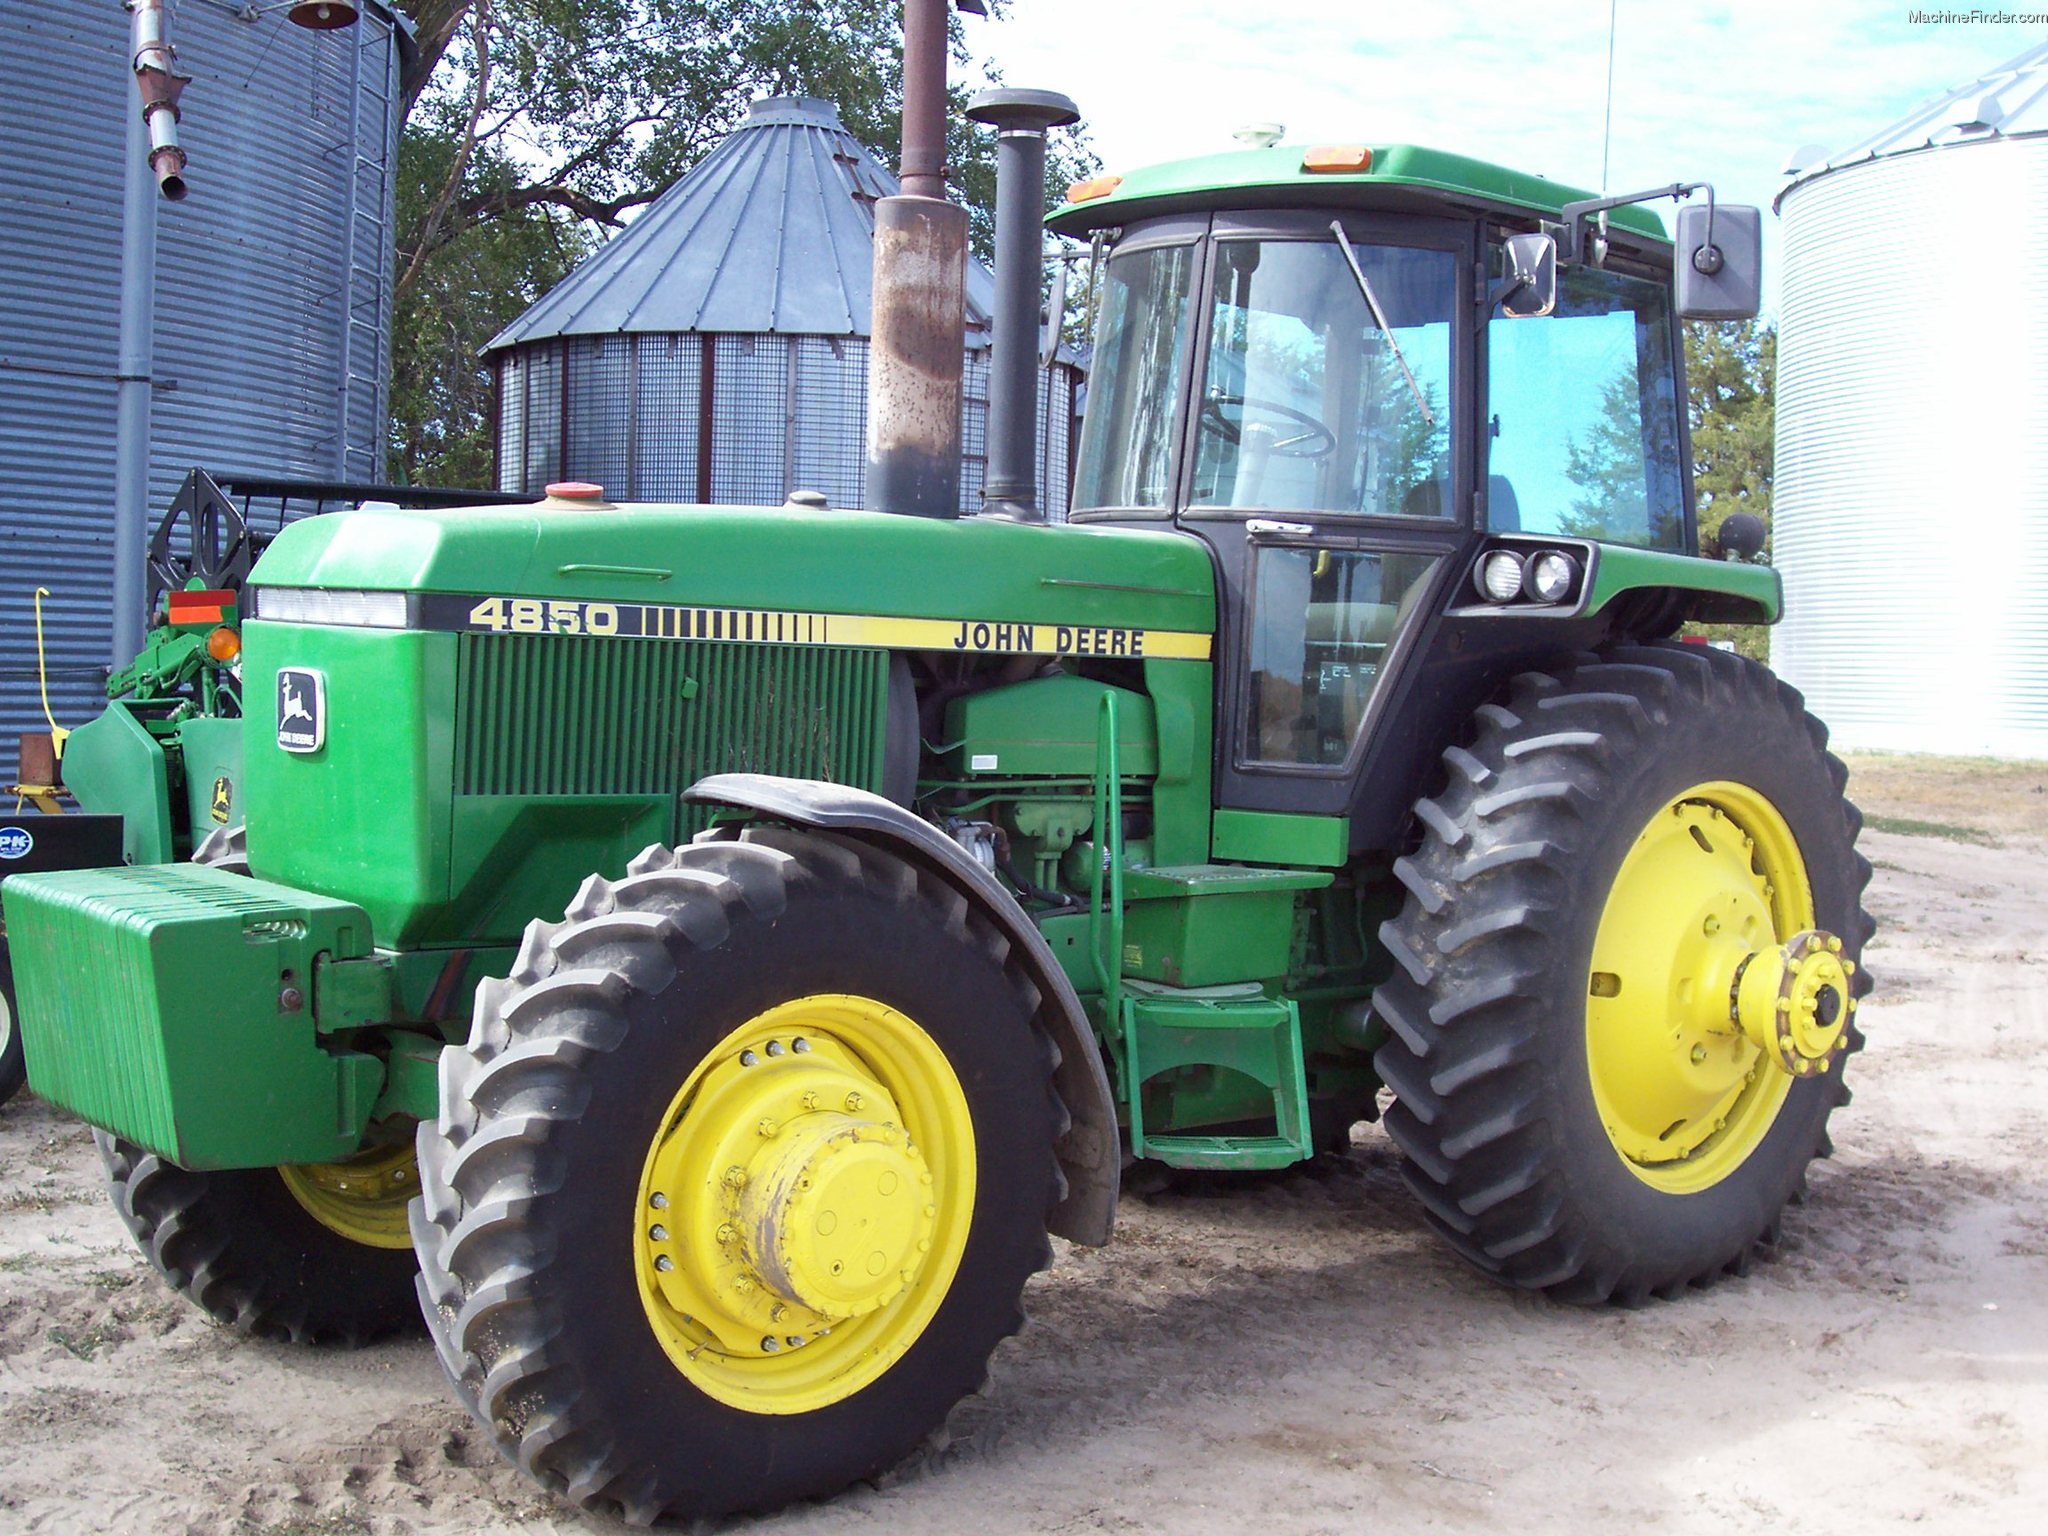 1984 John Deere 4850 Tractors - Row Crop (+100hp) - John Deere ...